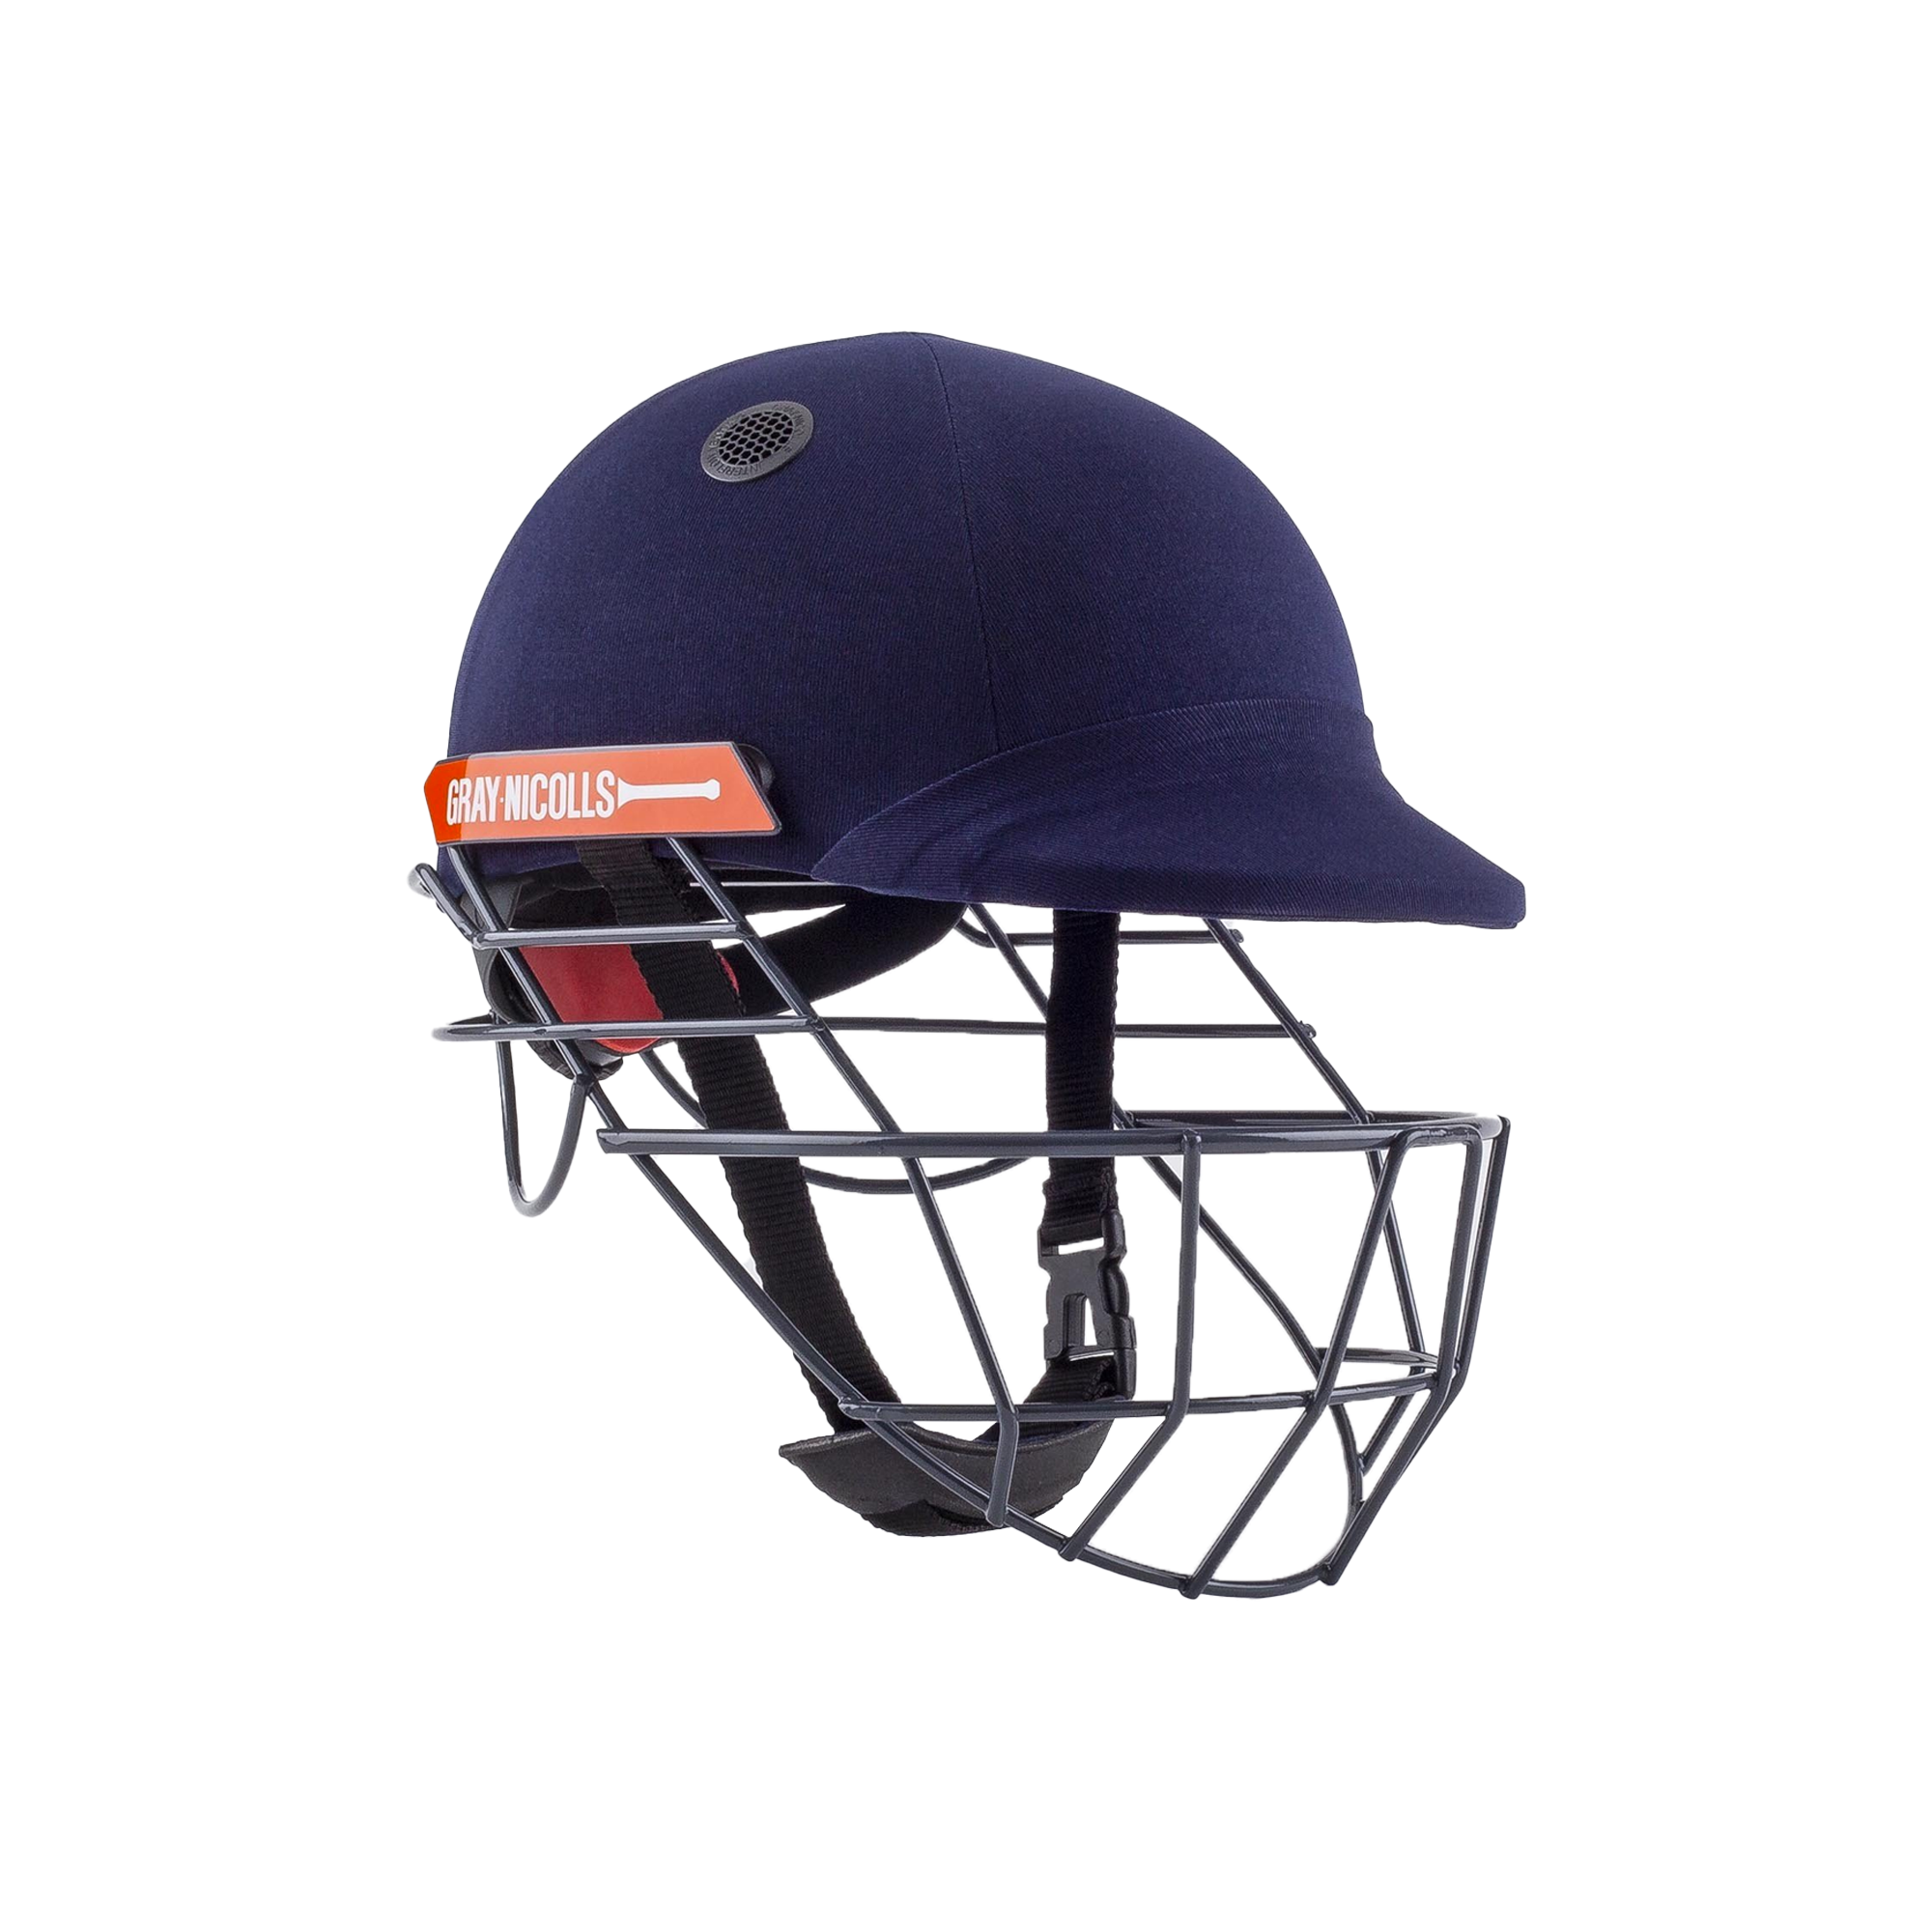 Gray-Nicolls Atomic 360 Cricket Helmet Junior (Small)-Bruntsfield Sports Online